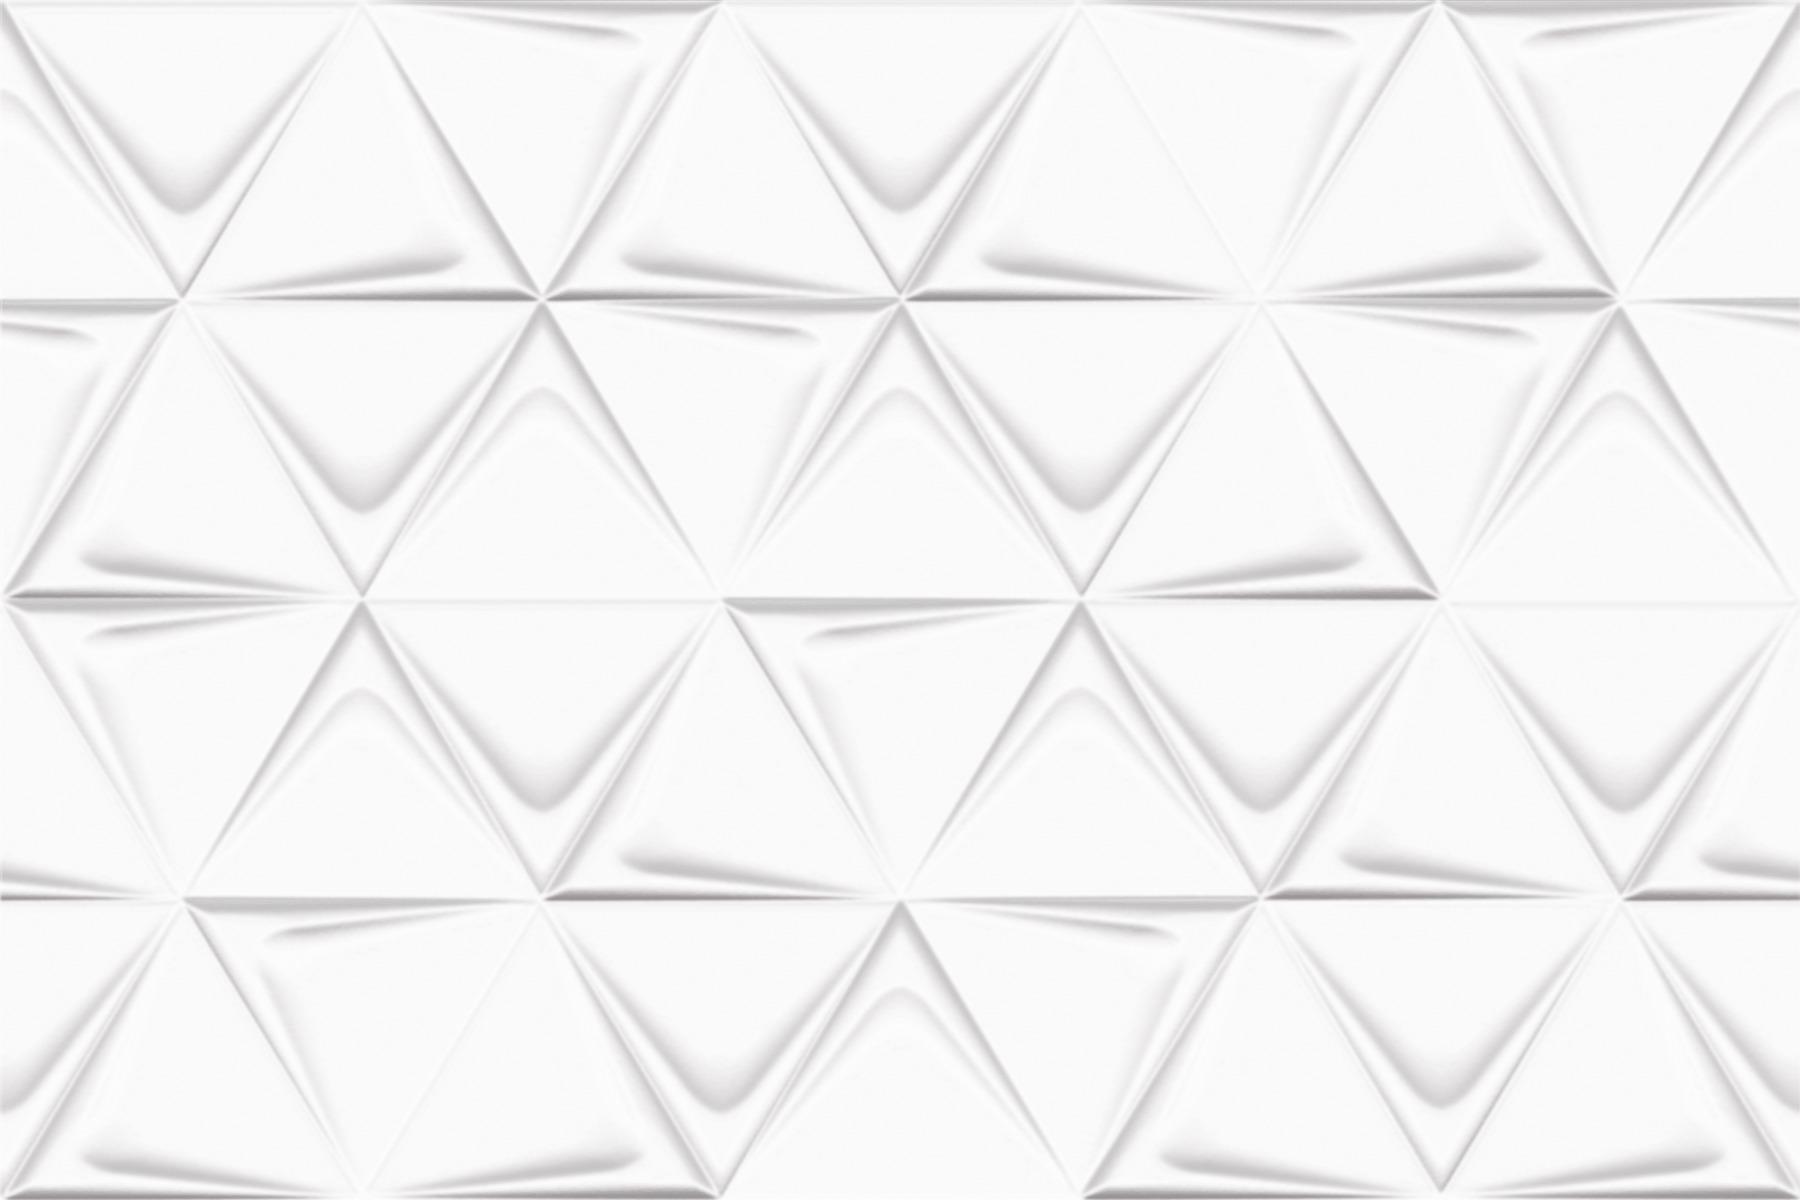 White Tiles for Bathroom Tiles, Kitchen Tiles, Balcony Tiles